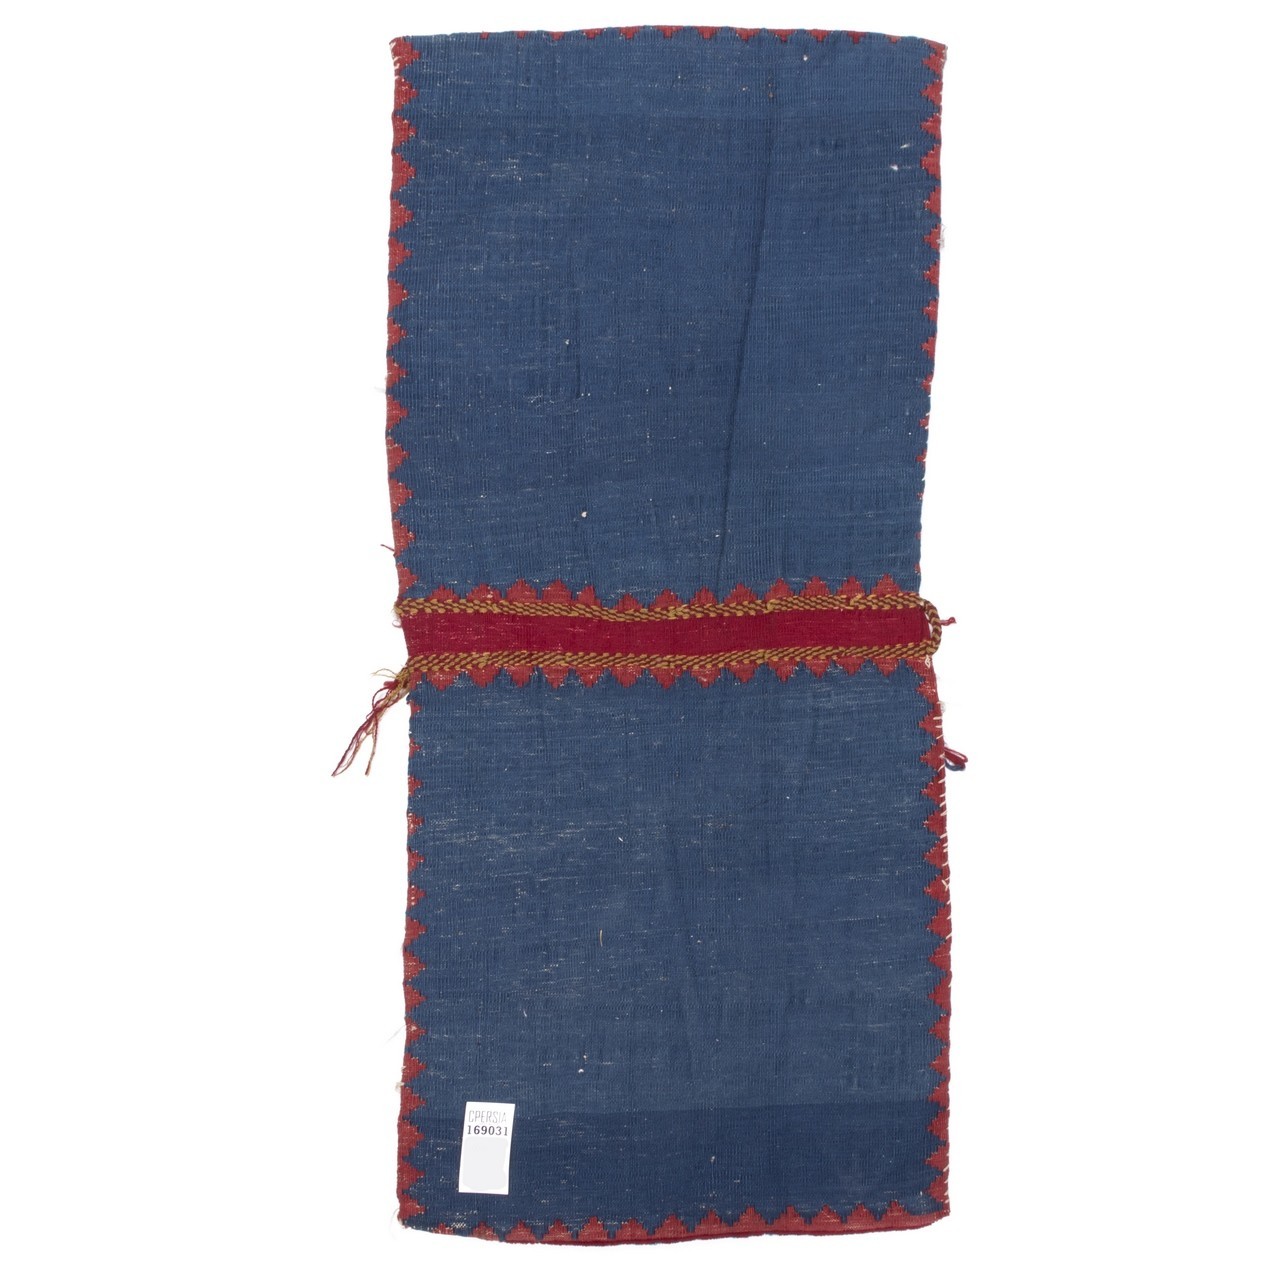 خورجین دستباف قدیمی قشقایی کد 169031